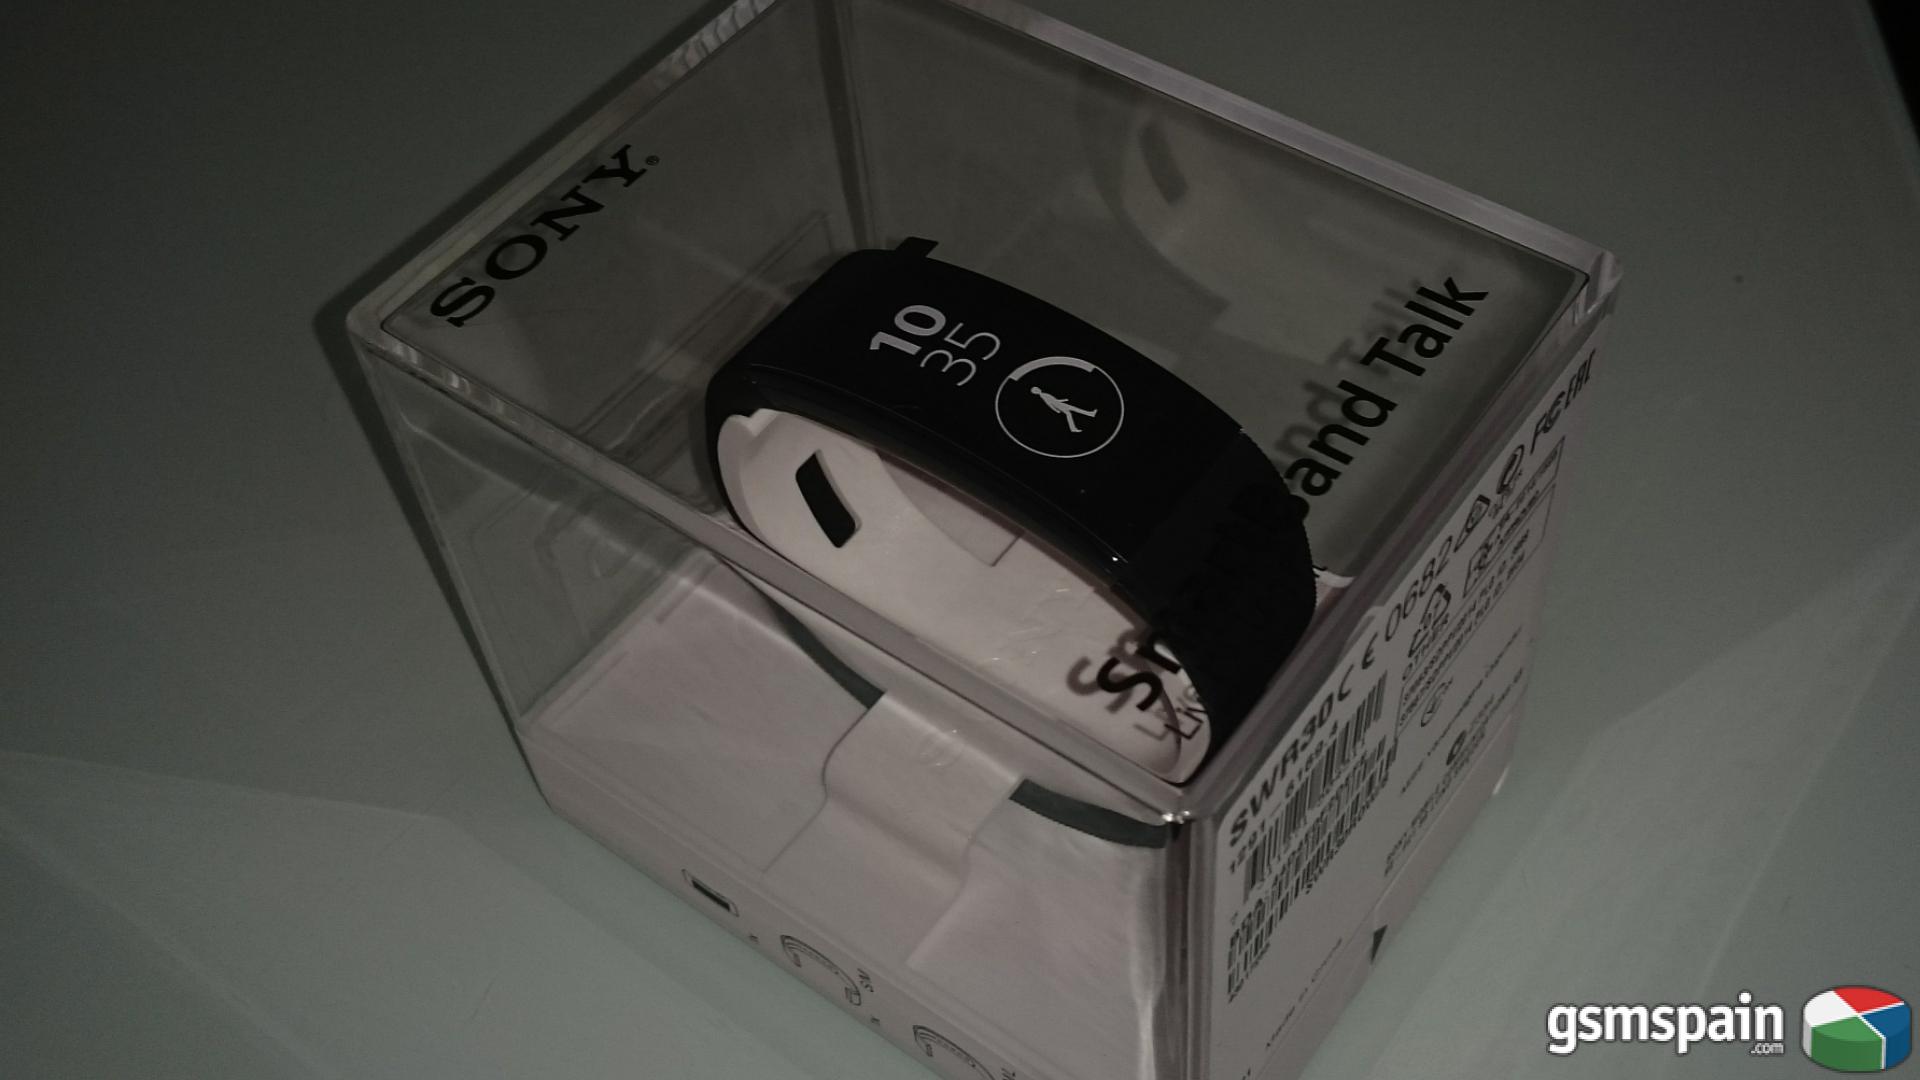 [VENDO] Vendo smartband de Sony sw30 79 euros